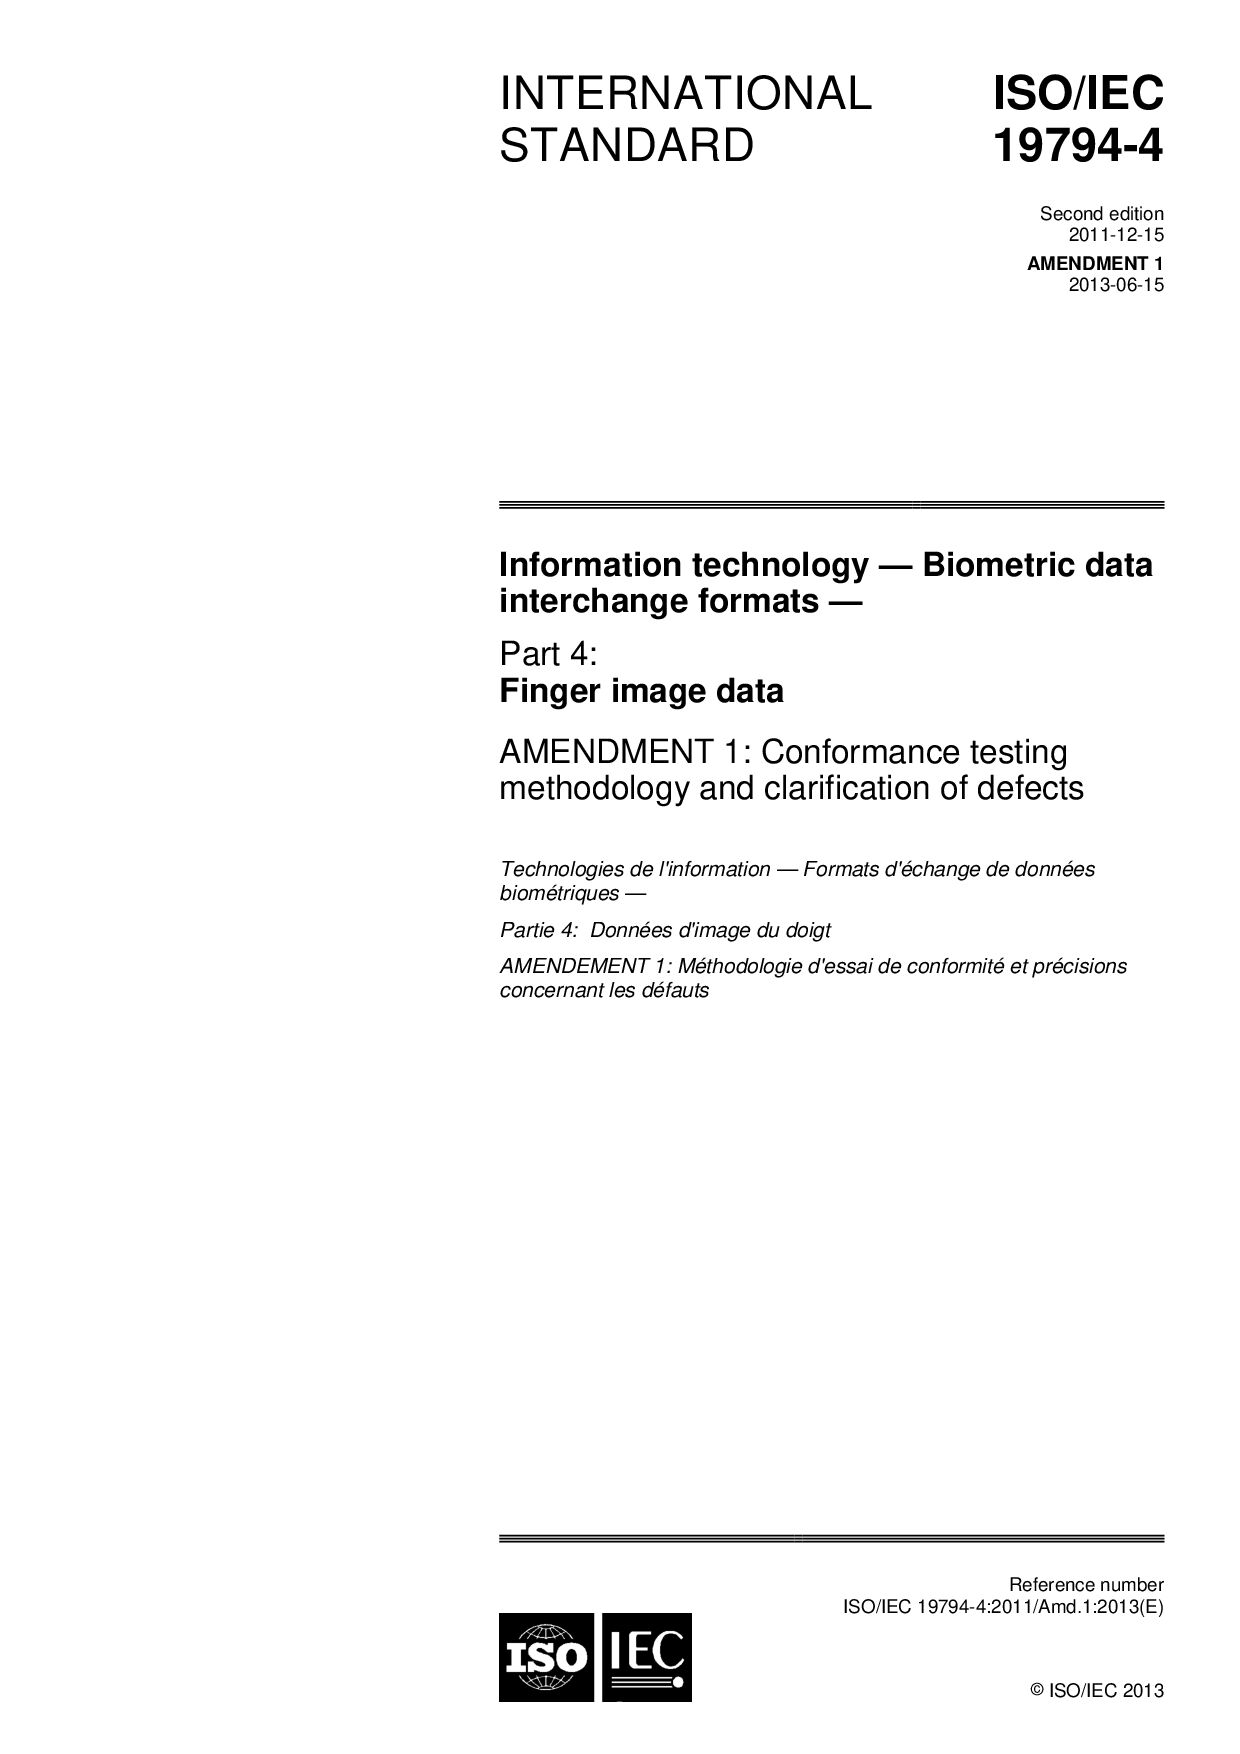 ISO/IEC 19794-4:2011/Amd 1:2013封面图